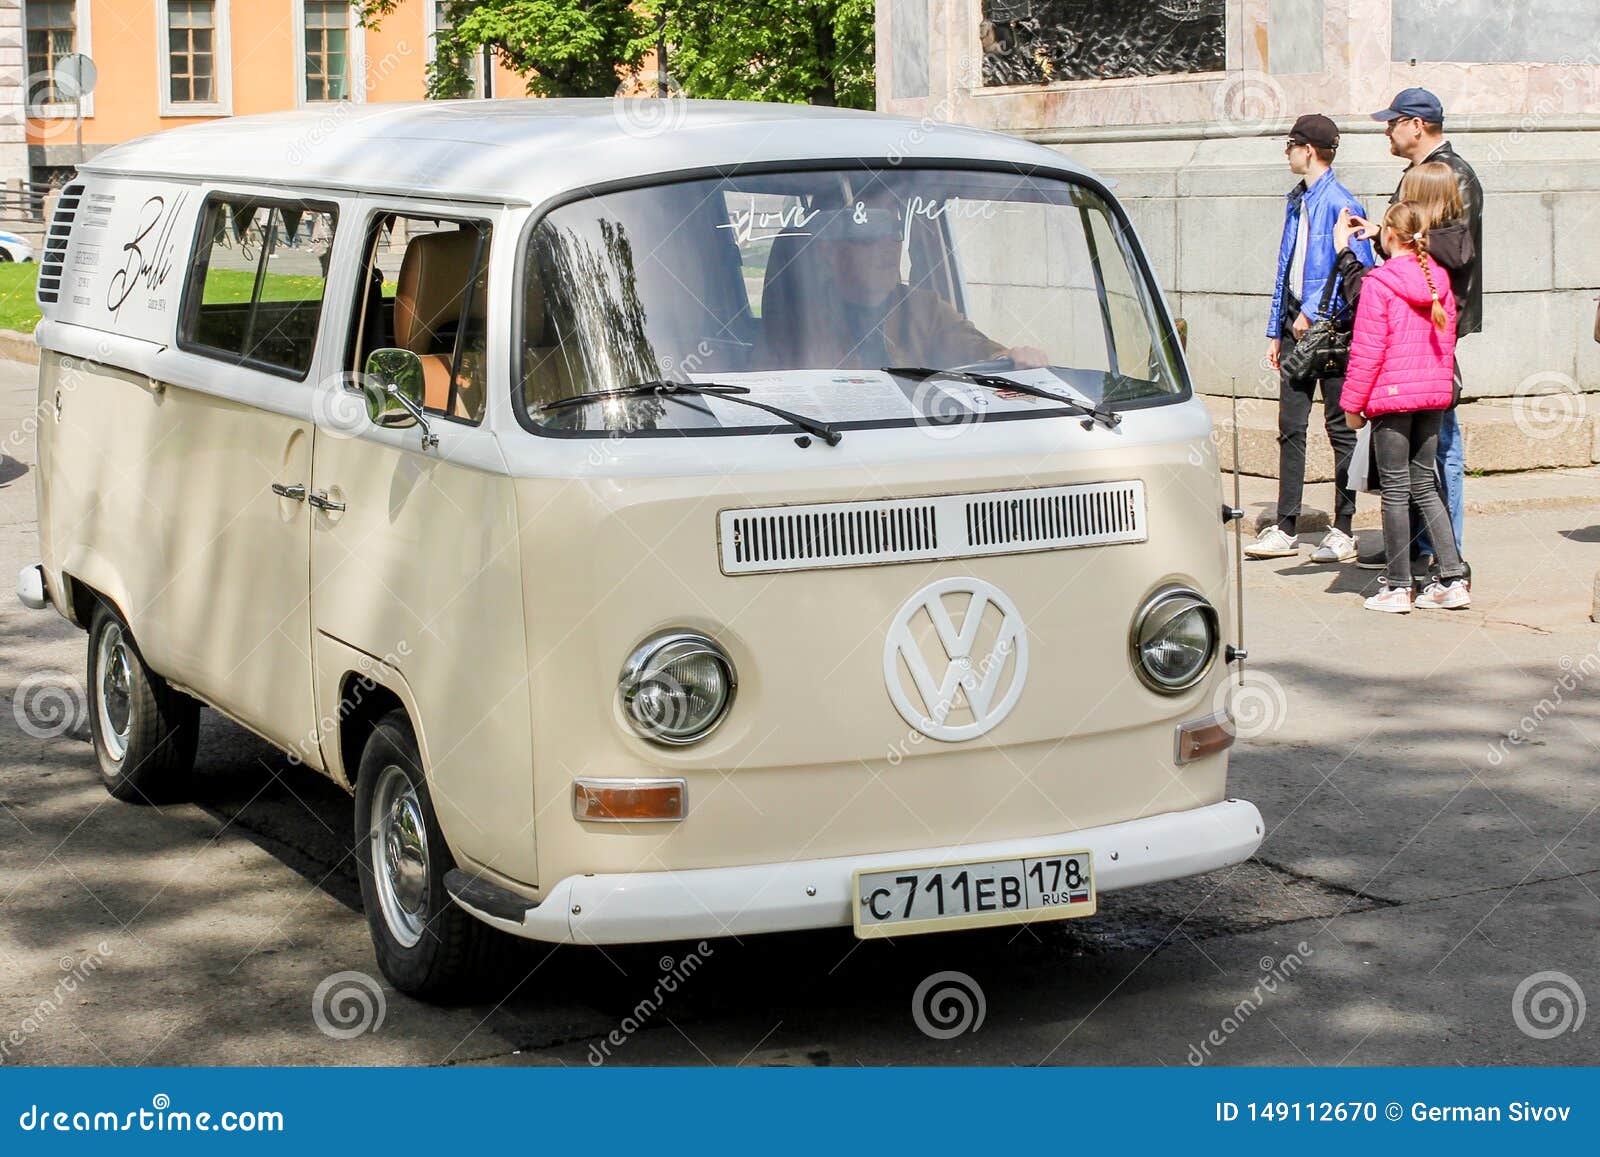 klink overschrijving Andere plaatsen Micro bus Volkswagen T 2 editorial image. Image of passenger - 149112670